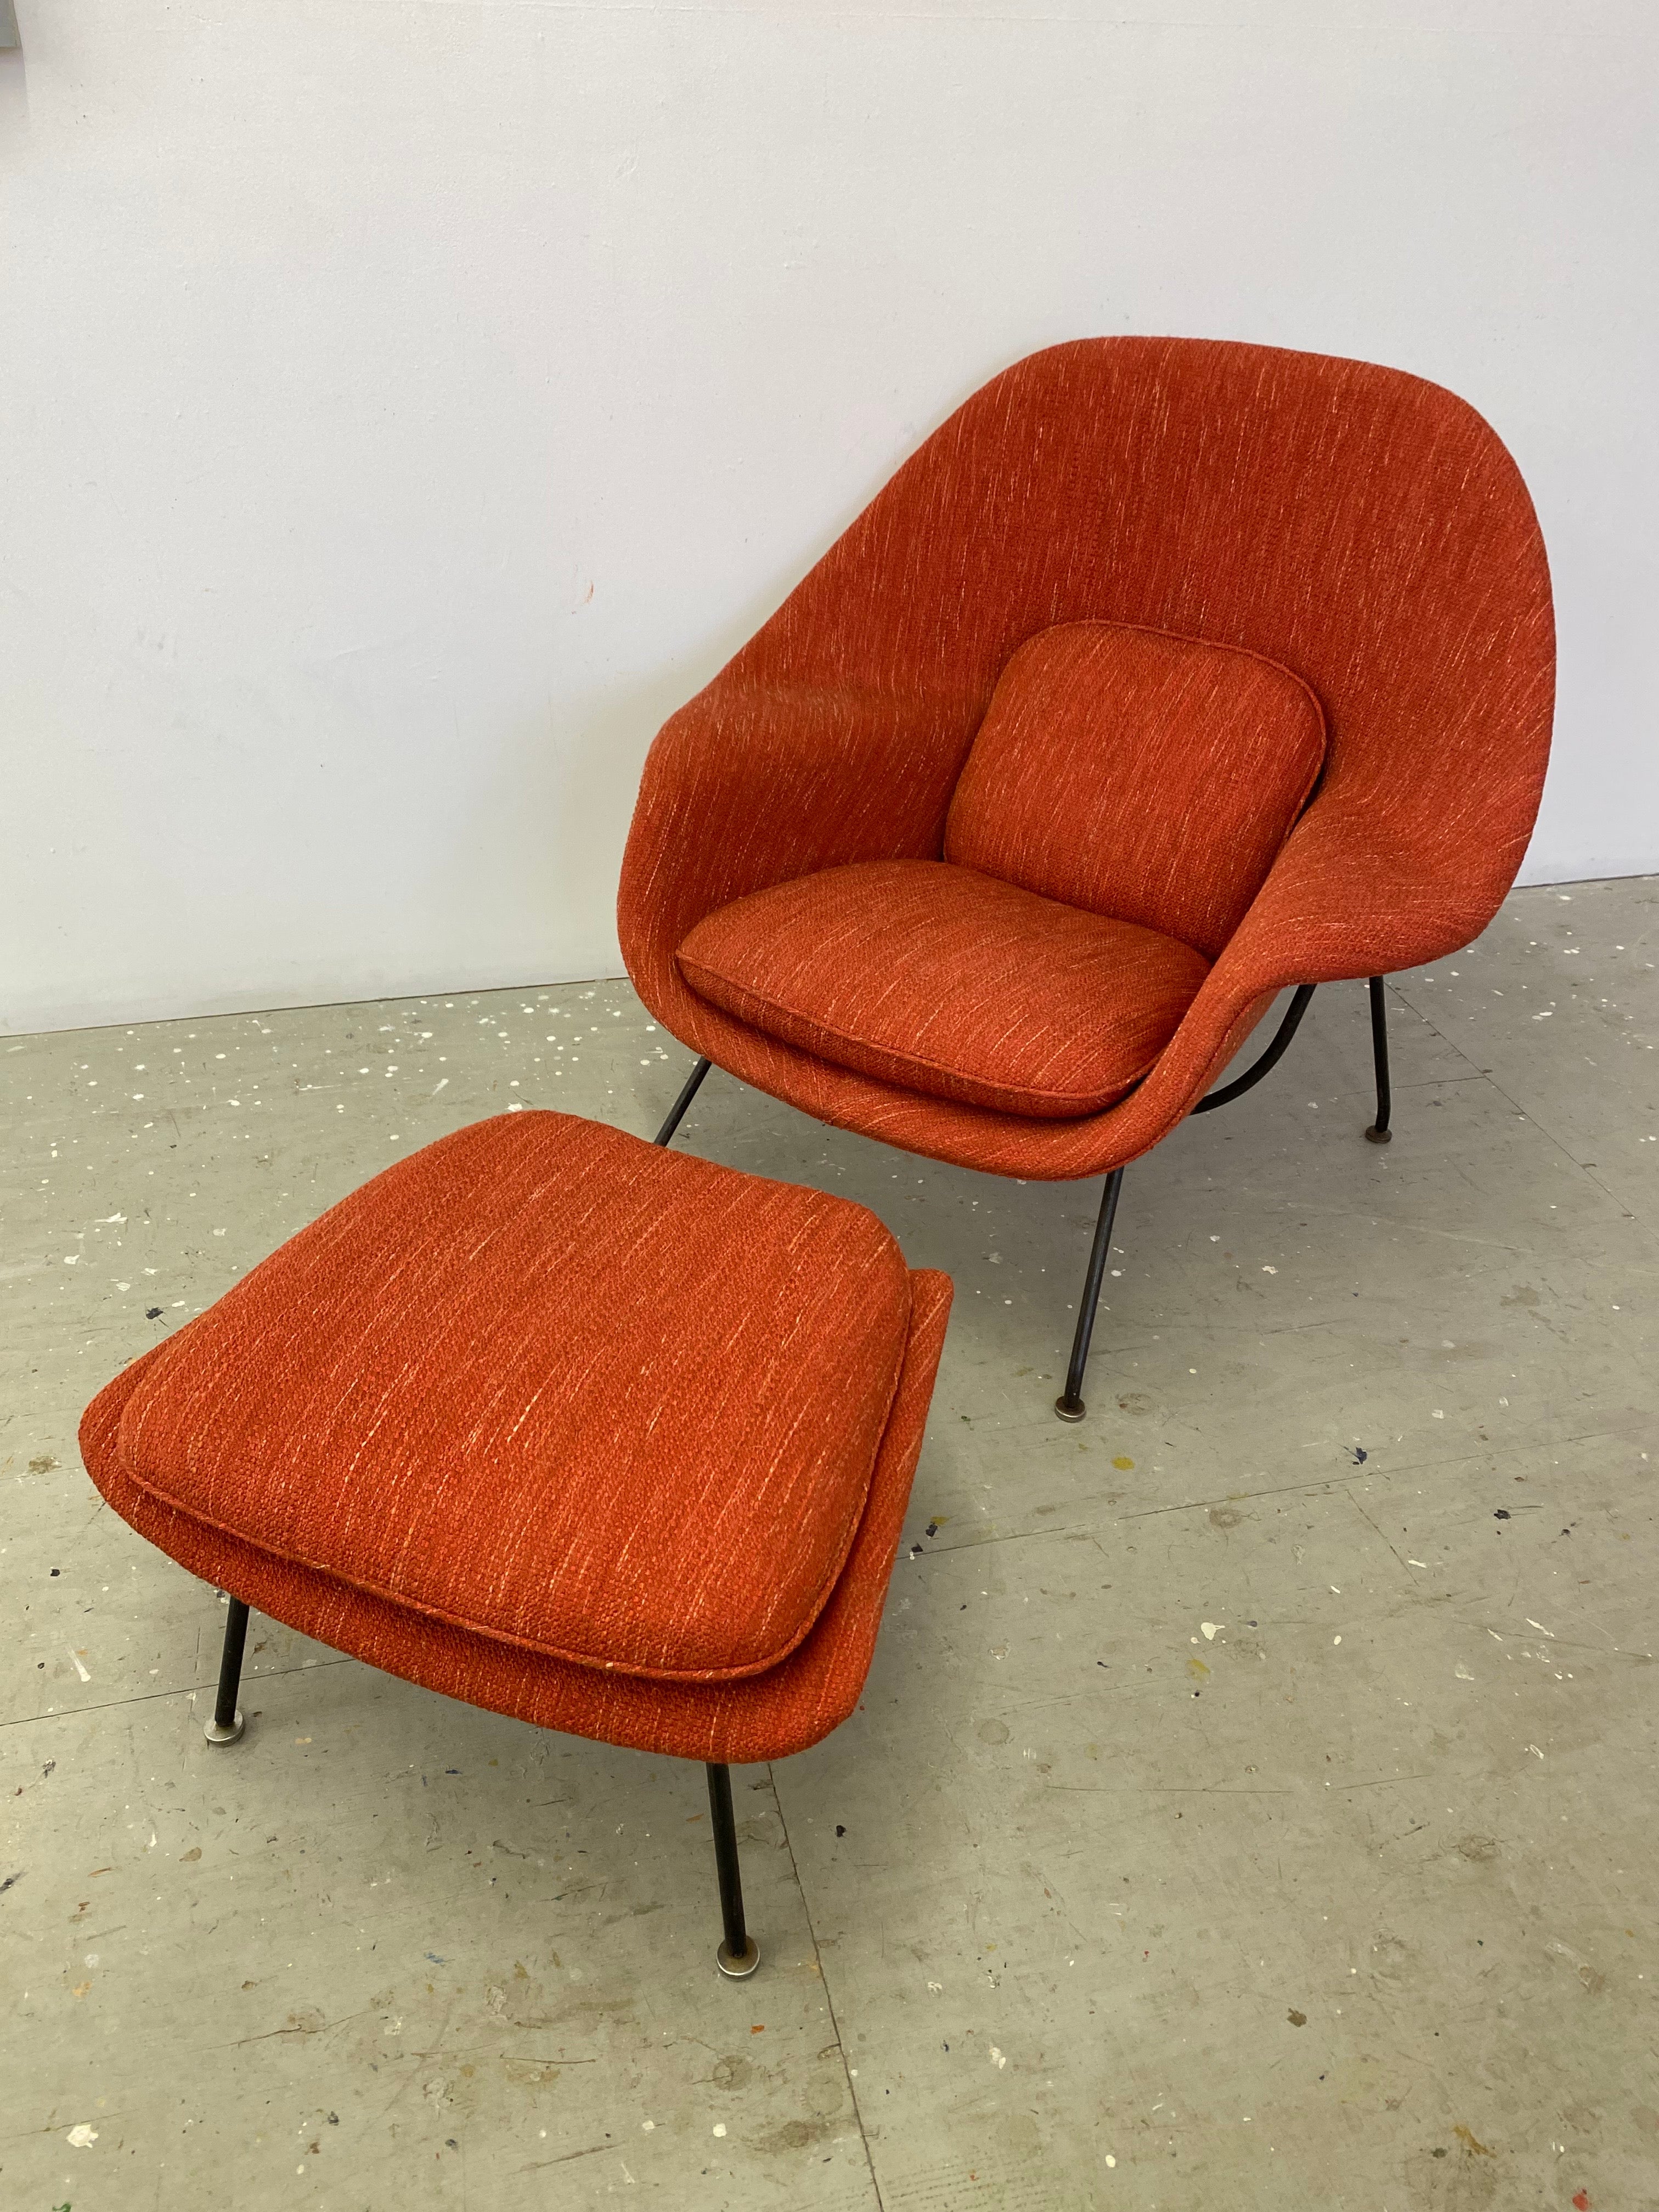 Eero Saarinen für Knoll Womb Chair und Ottomane.  Wahrscheinlich einer der bequemsten Stühle, die je geschaffen wurden!  Dieser Stuhl mit Ottomane stammt aus der Mitte der 60er Jahre, obwohl das Design von 1948 ist.  Die alten Modelle bestehen aus